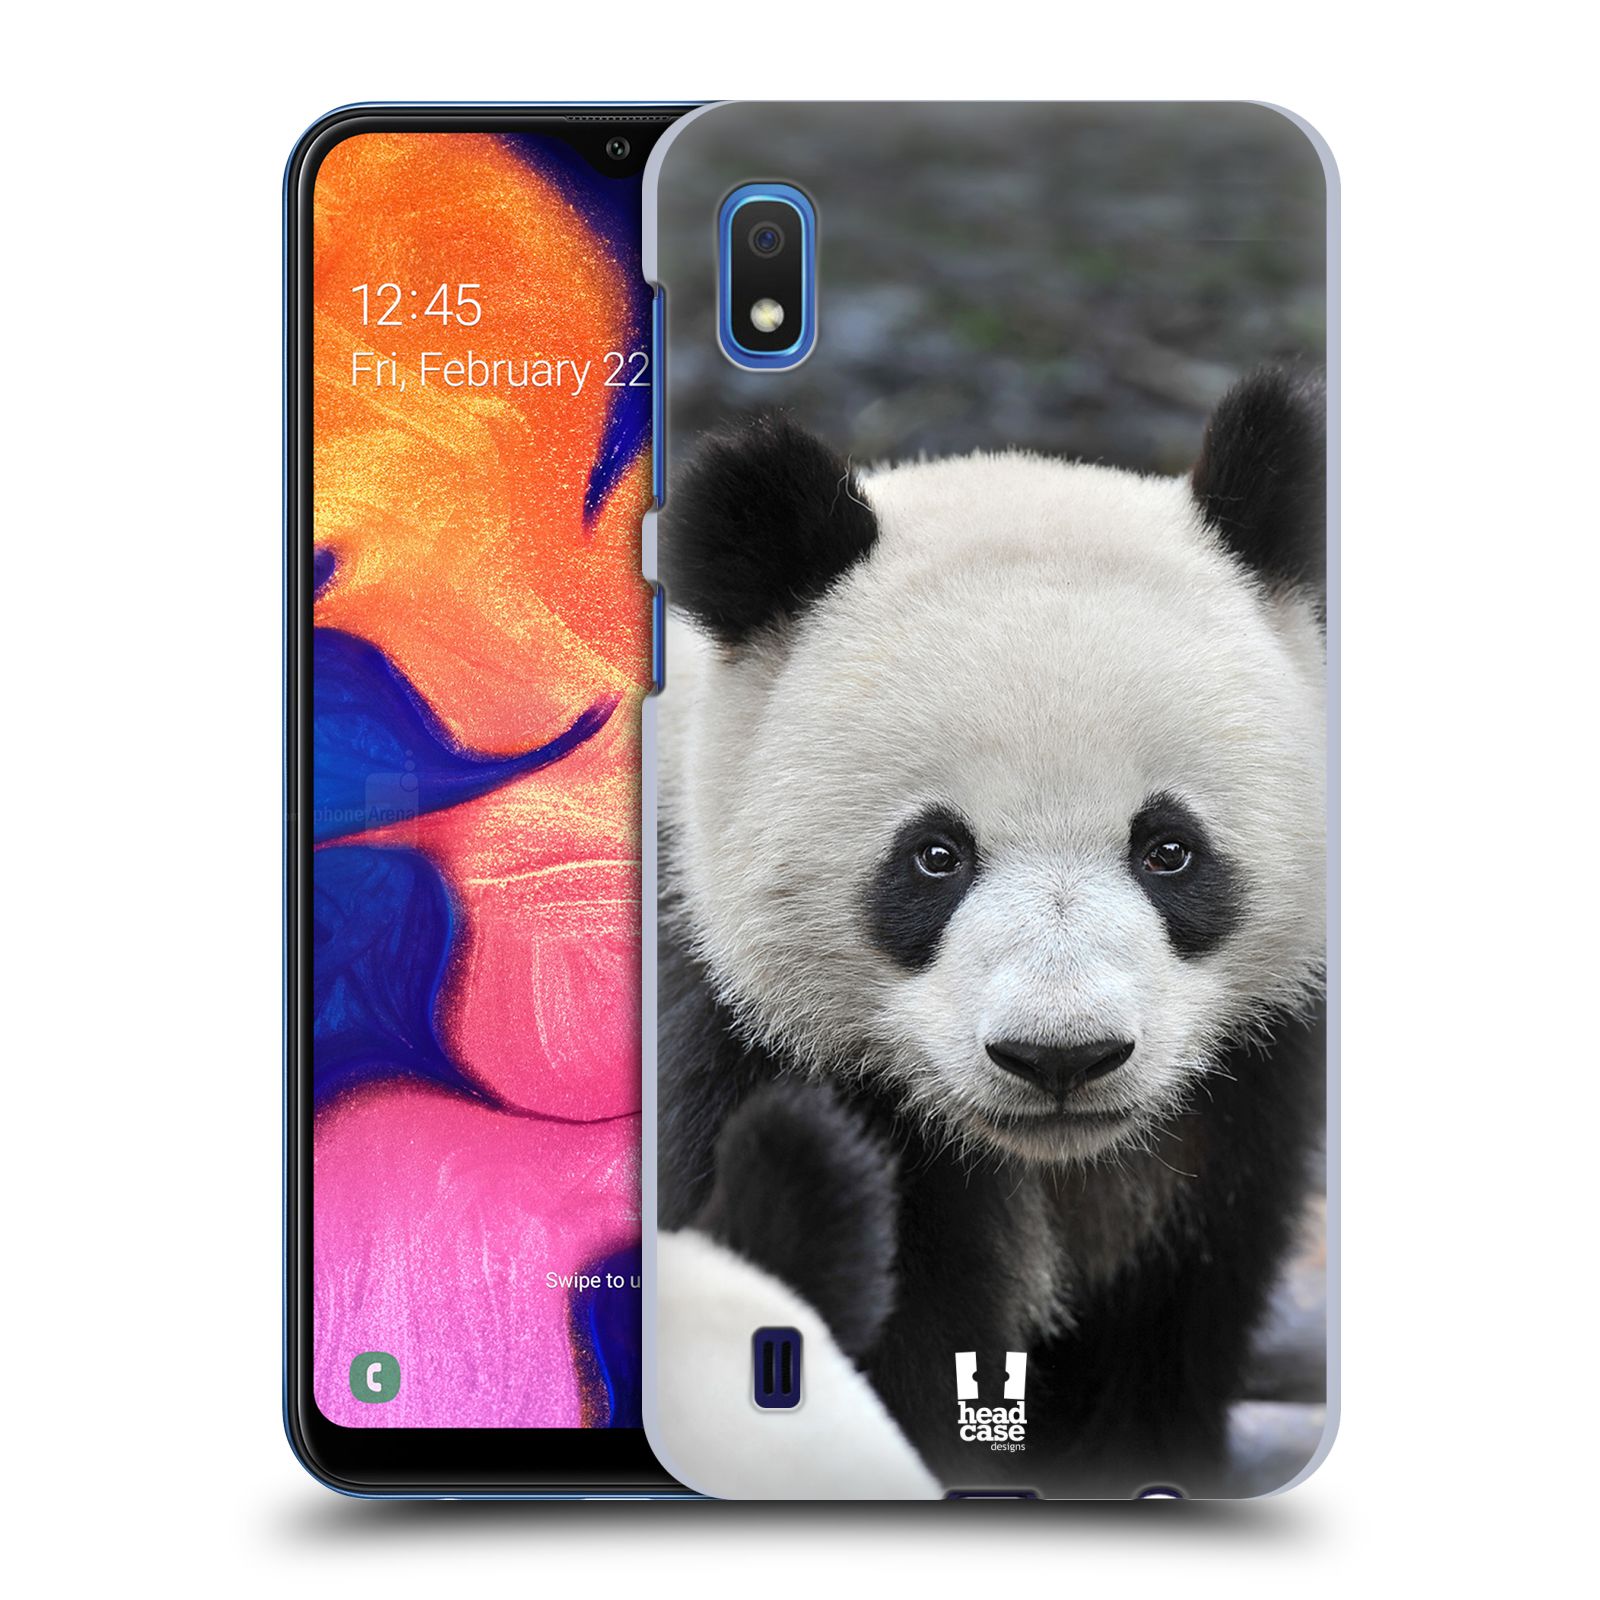 Zadní obal pro mobil Samsung Galaxy A10 - HEAD CASE - Svět zvířat medvěd panda